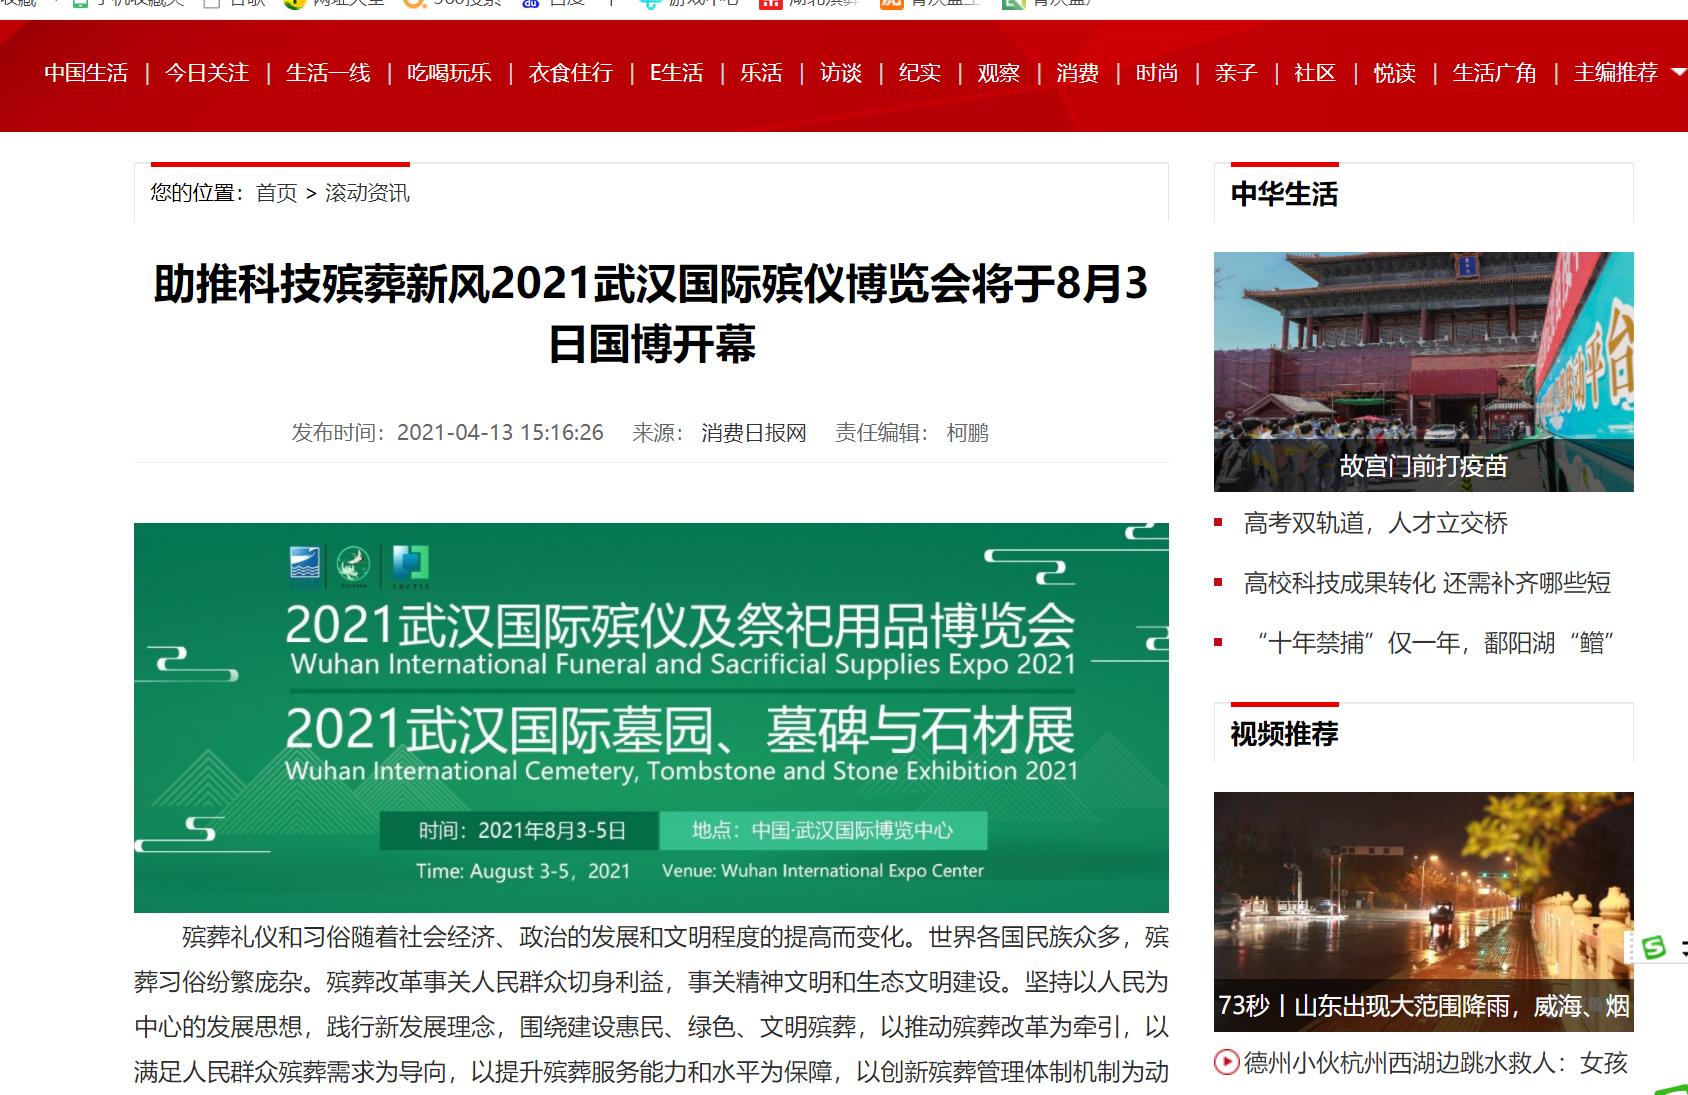 感谢中华网报道武汉国际殡仪博览会